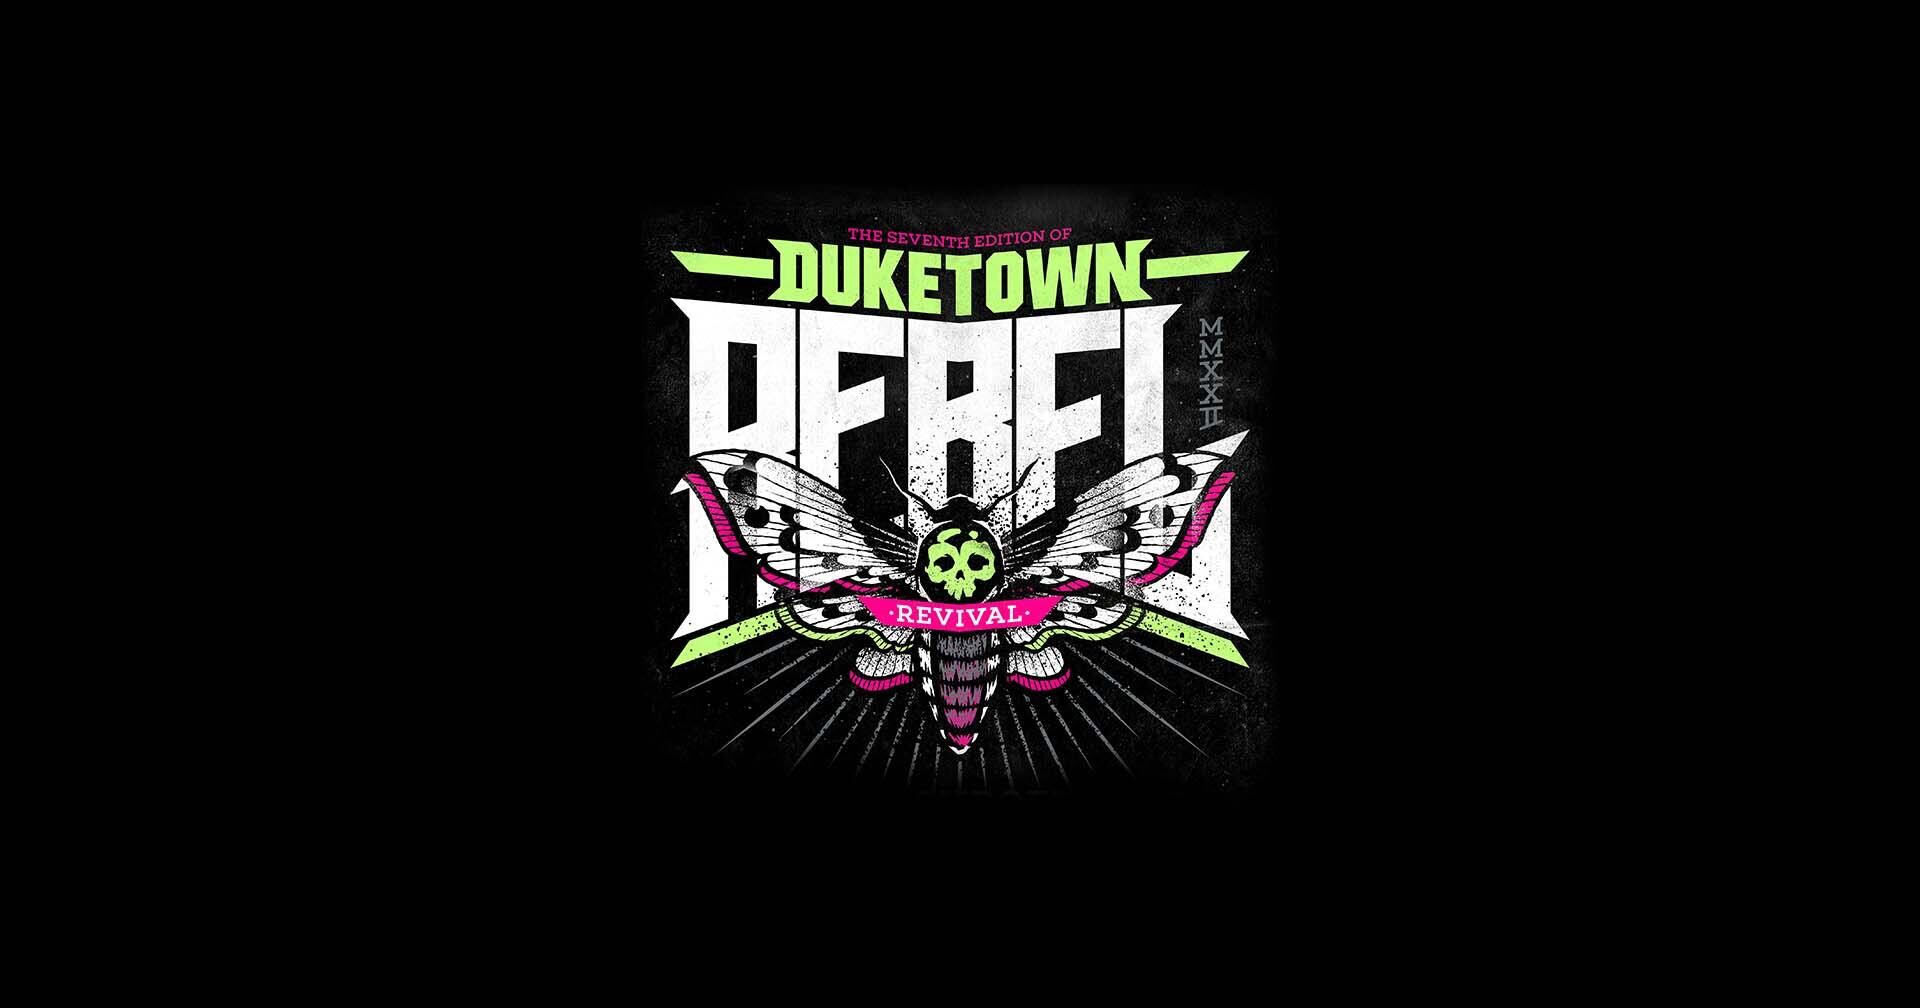 Duketown Rebel Revival